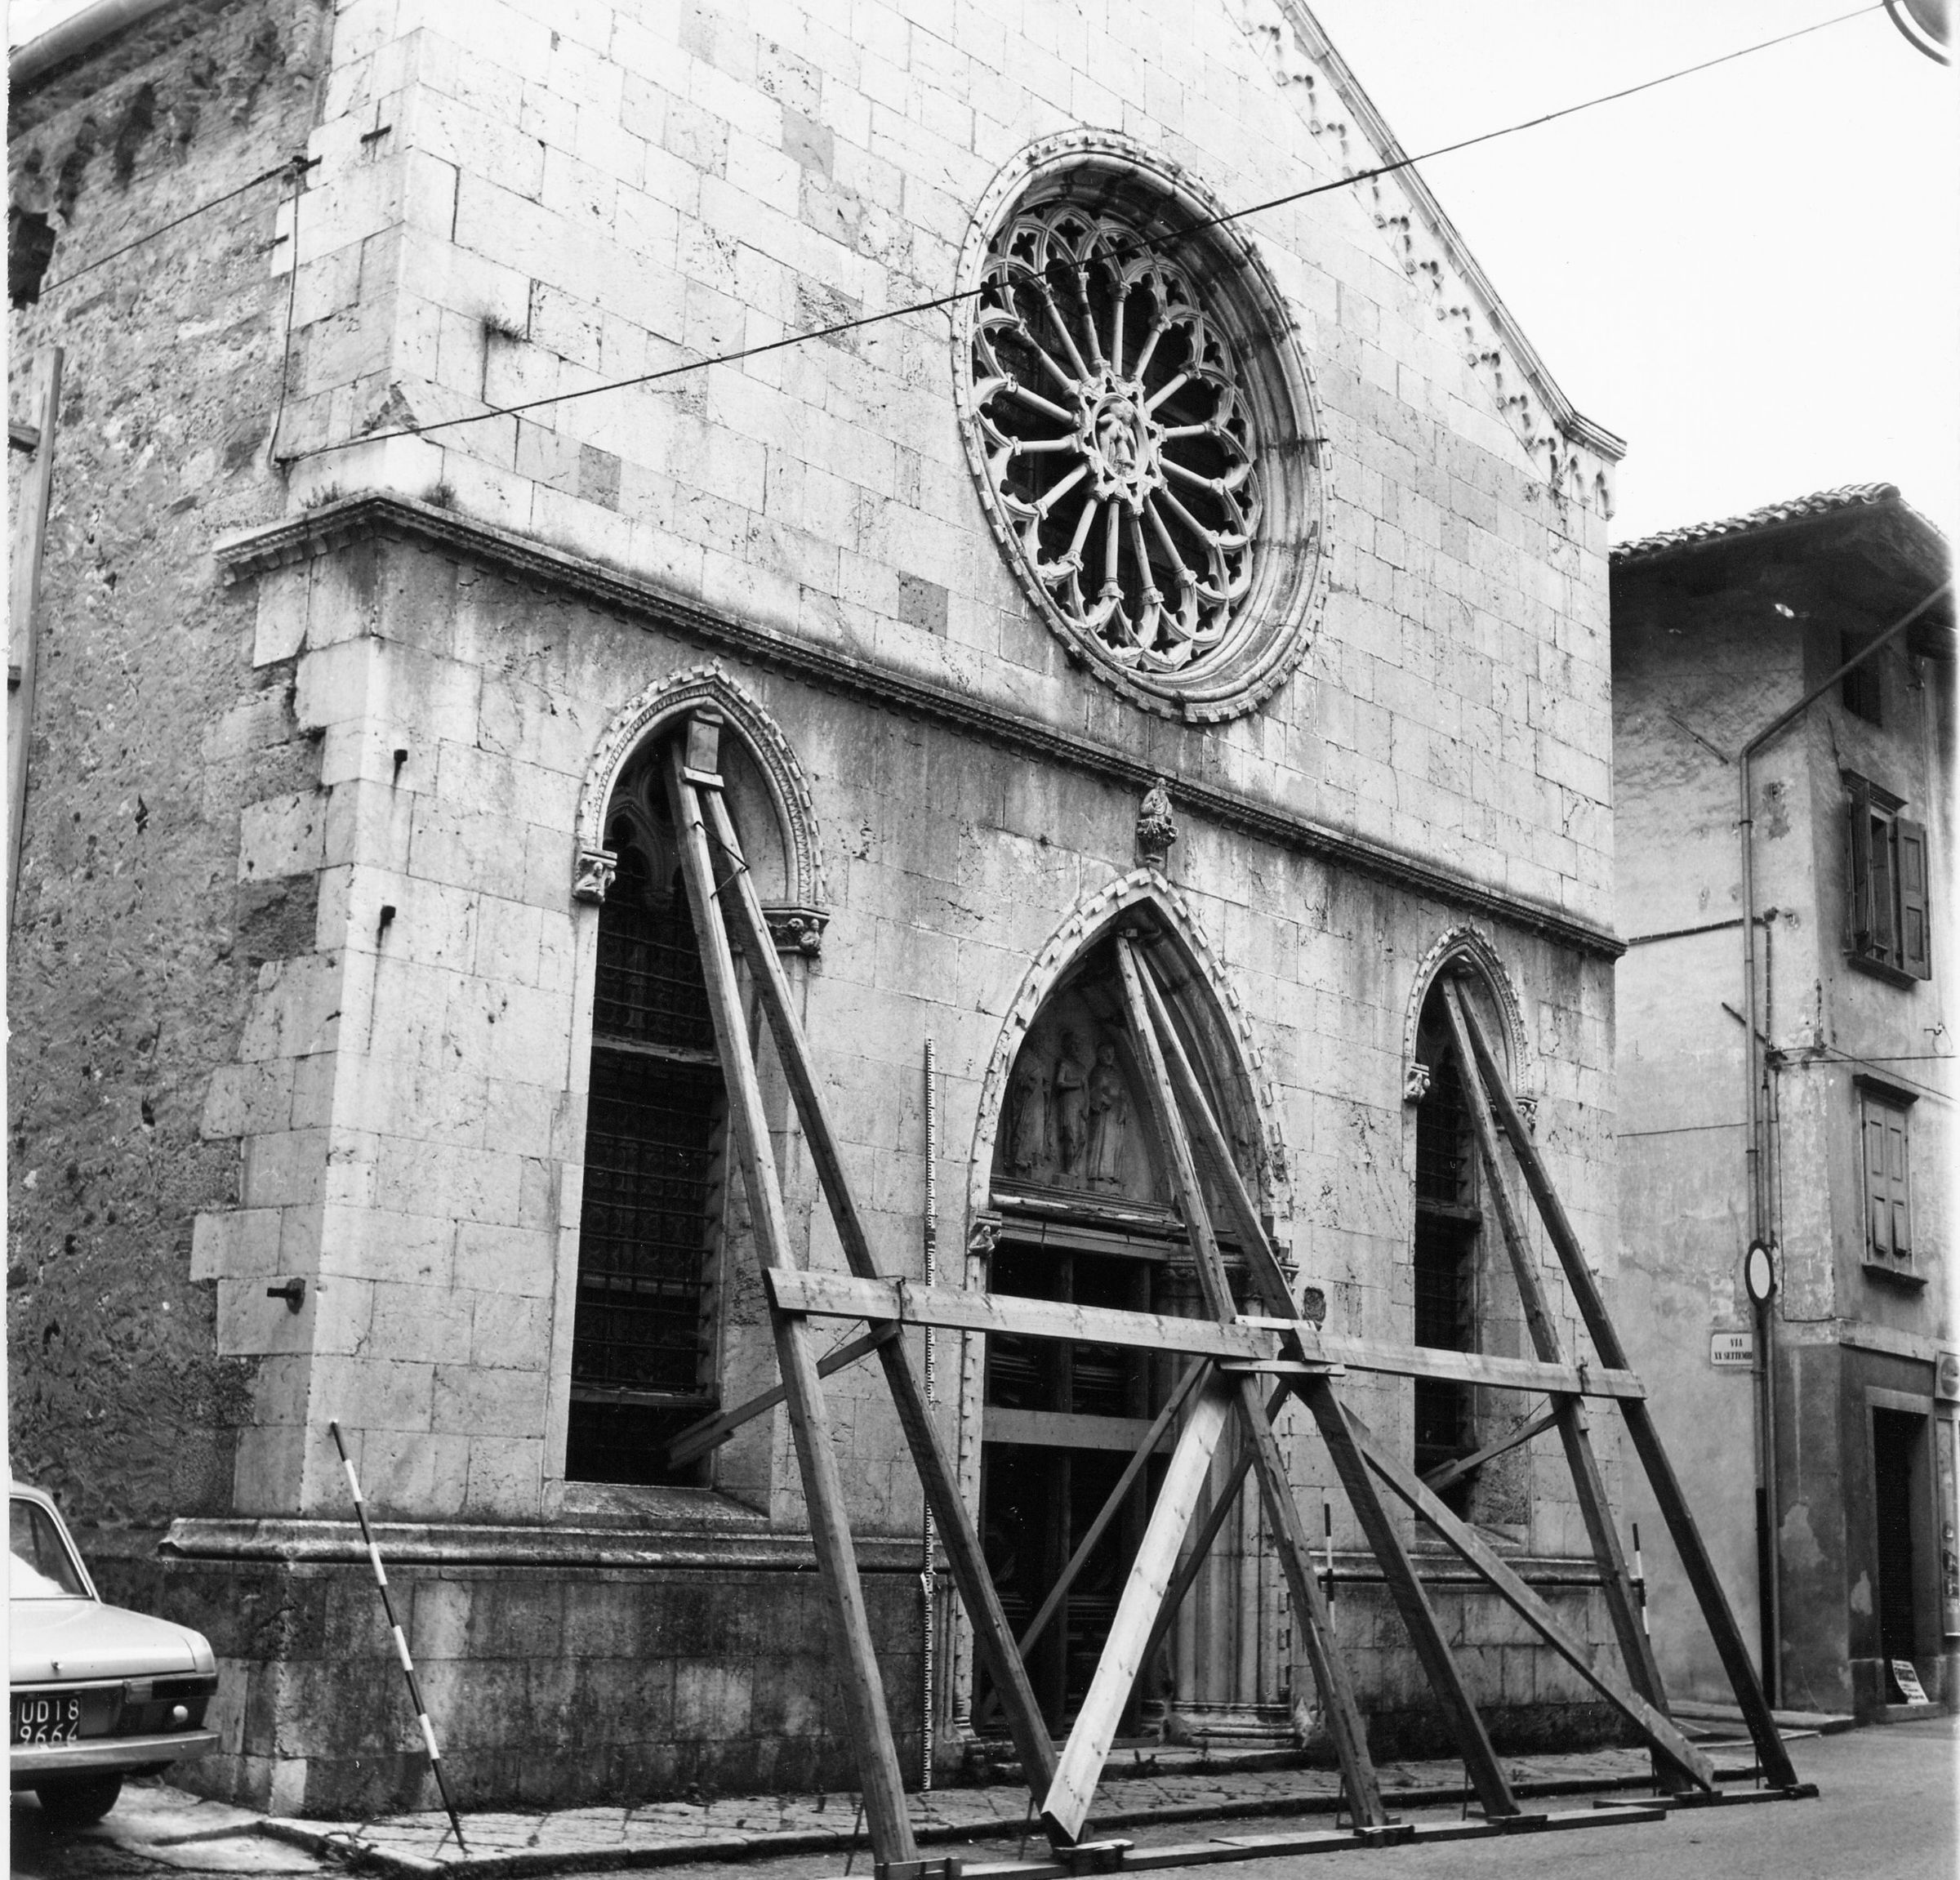 Fotografo non identificato, San Daniele del Friuli - Terremoto, Chiesa di S. Antonio, facciata, vista generale, esterno, 1976, gelatina ai sali d'argento/pellicola (acetati), 6x6cm, N032602